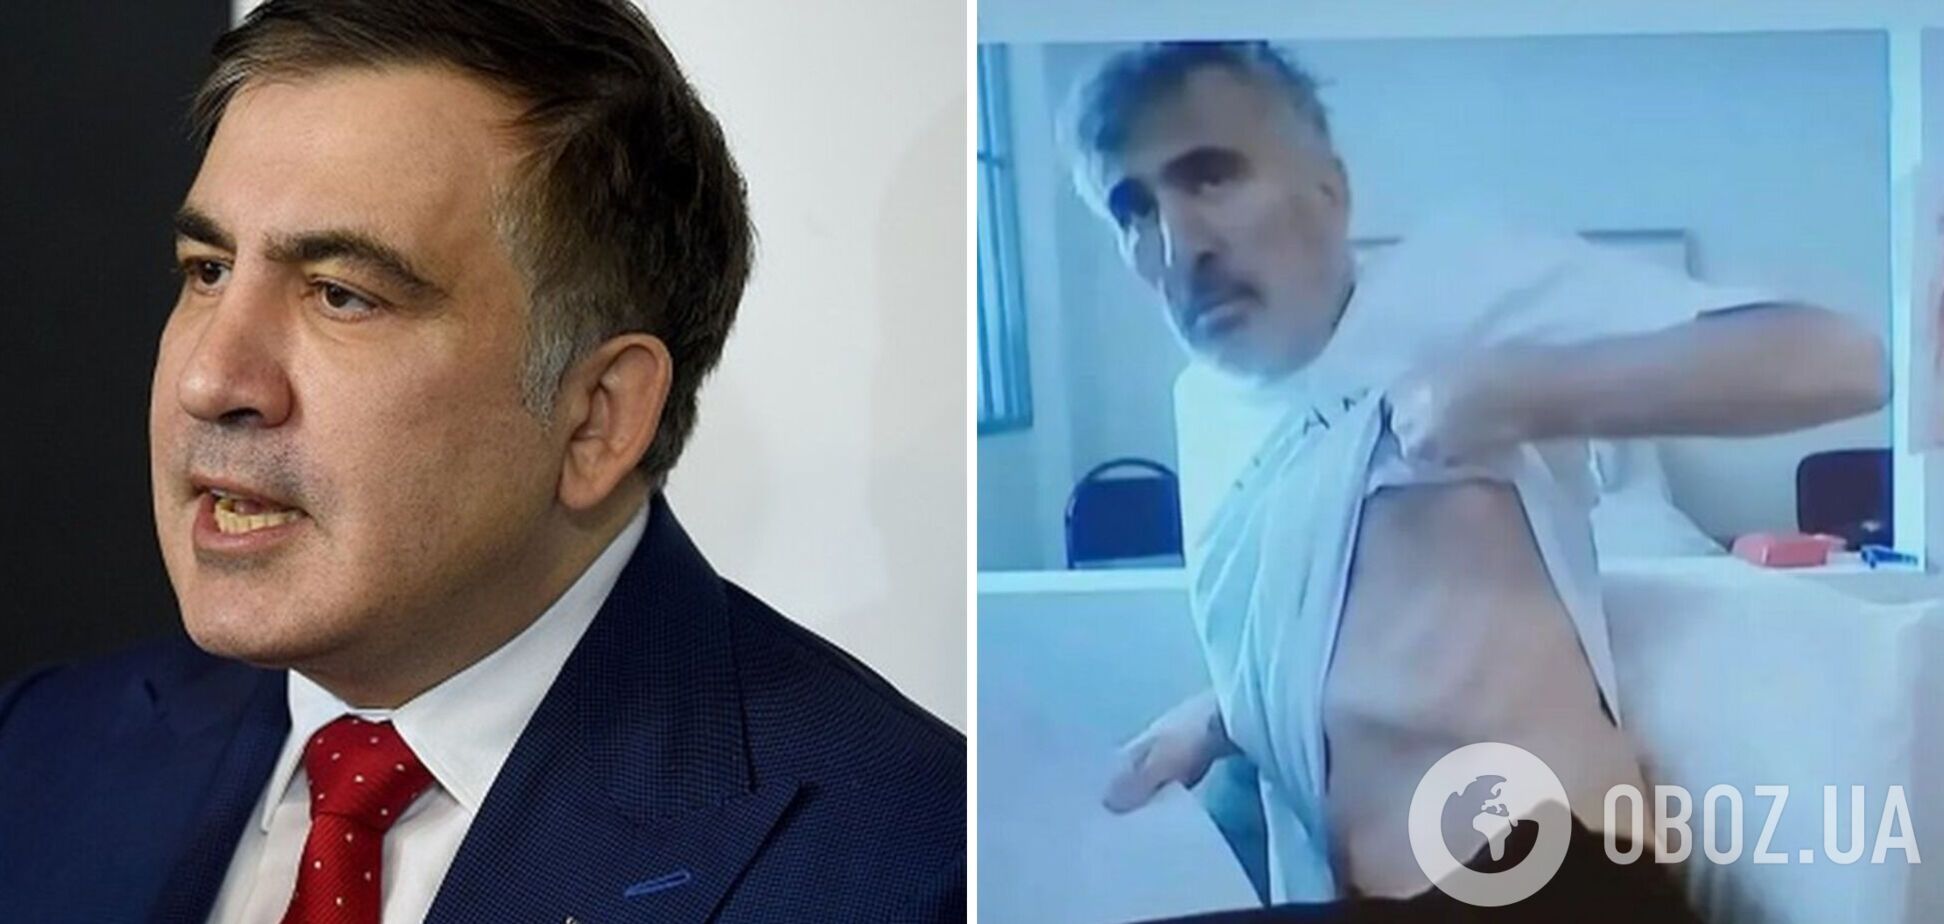 Саакашвили заявил, что похудел почти на 60 кг и находится 'на грани смерти'